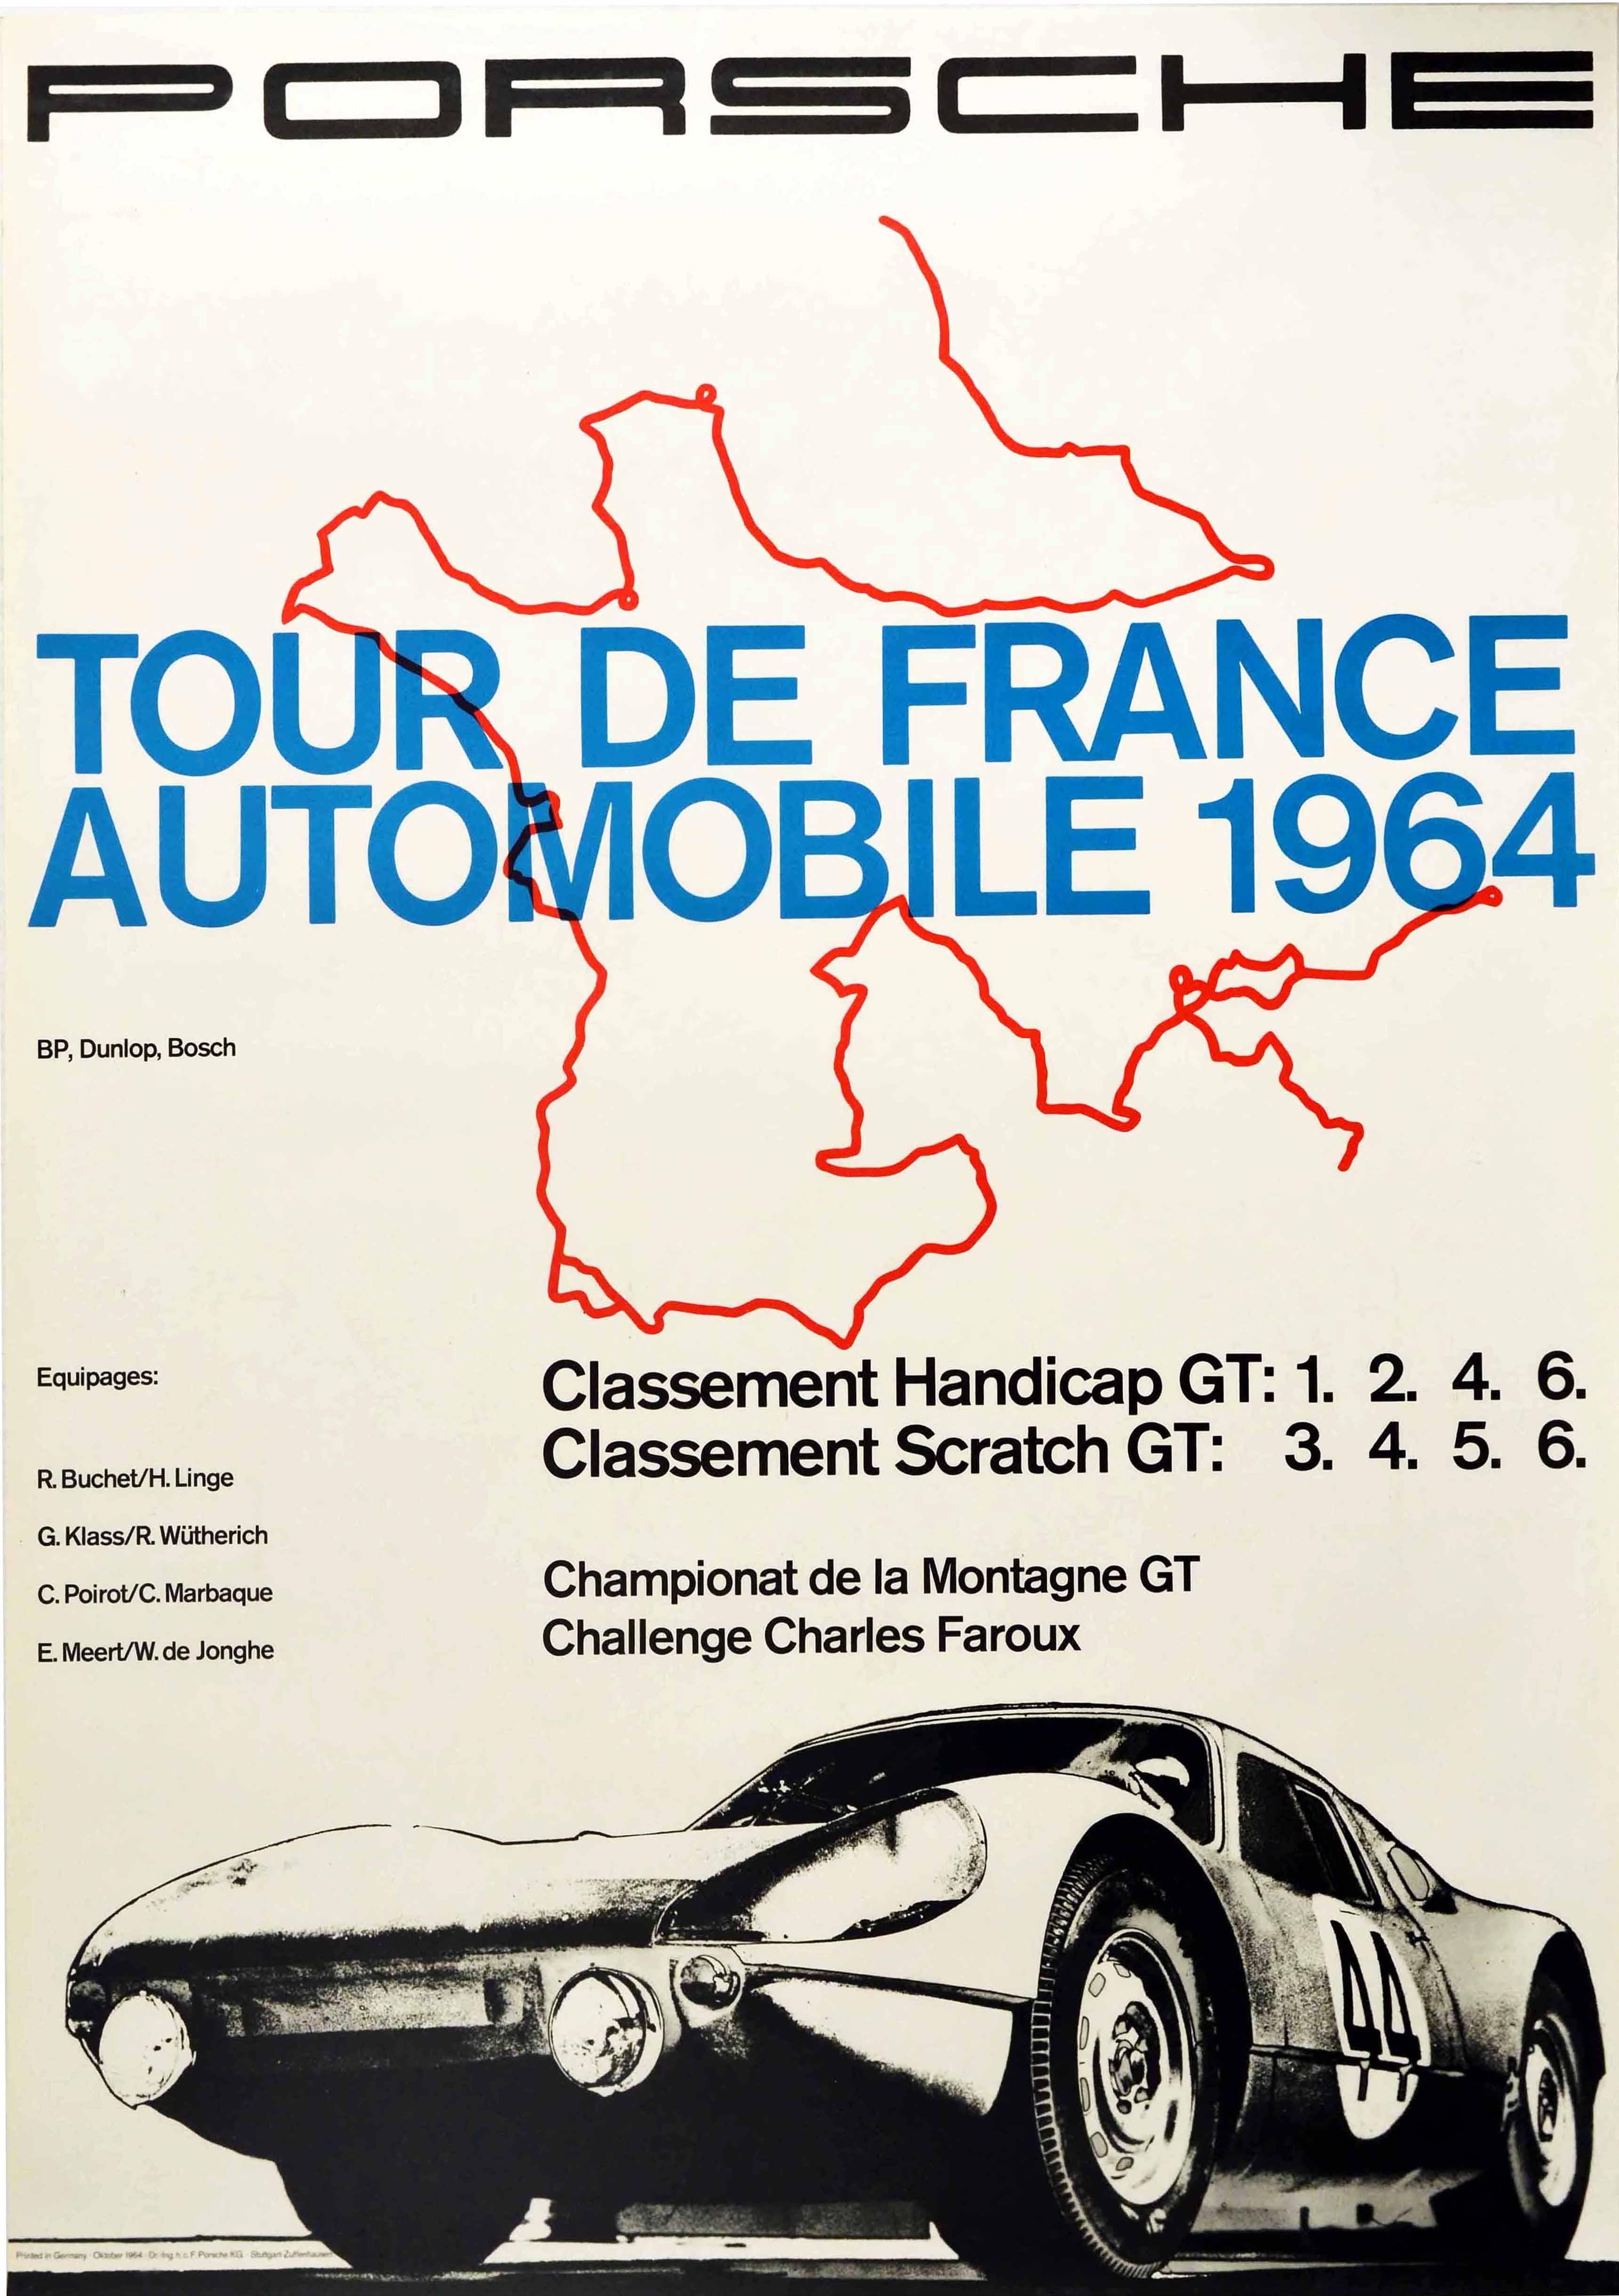 Unknown Print - Original Vintage Poster Porsche 904 Tour De France Automobile 1964 GT Car Racing